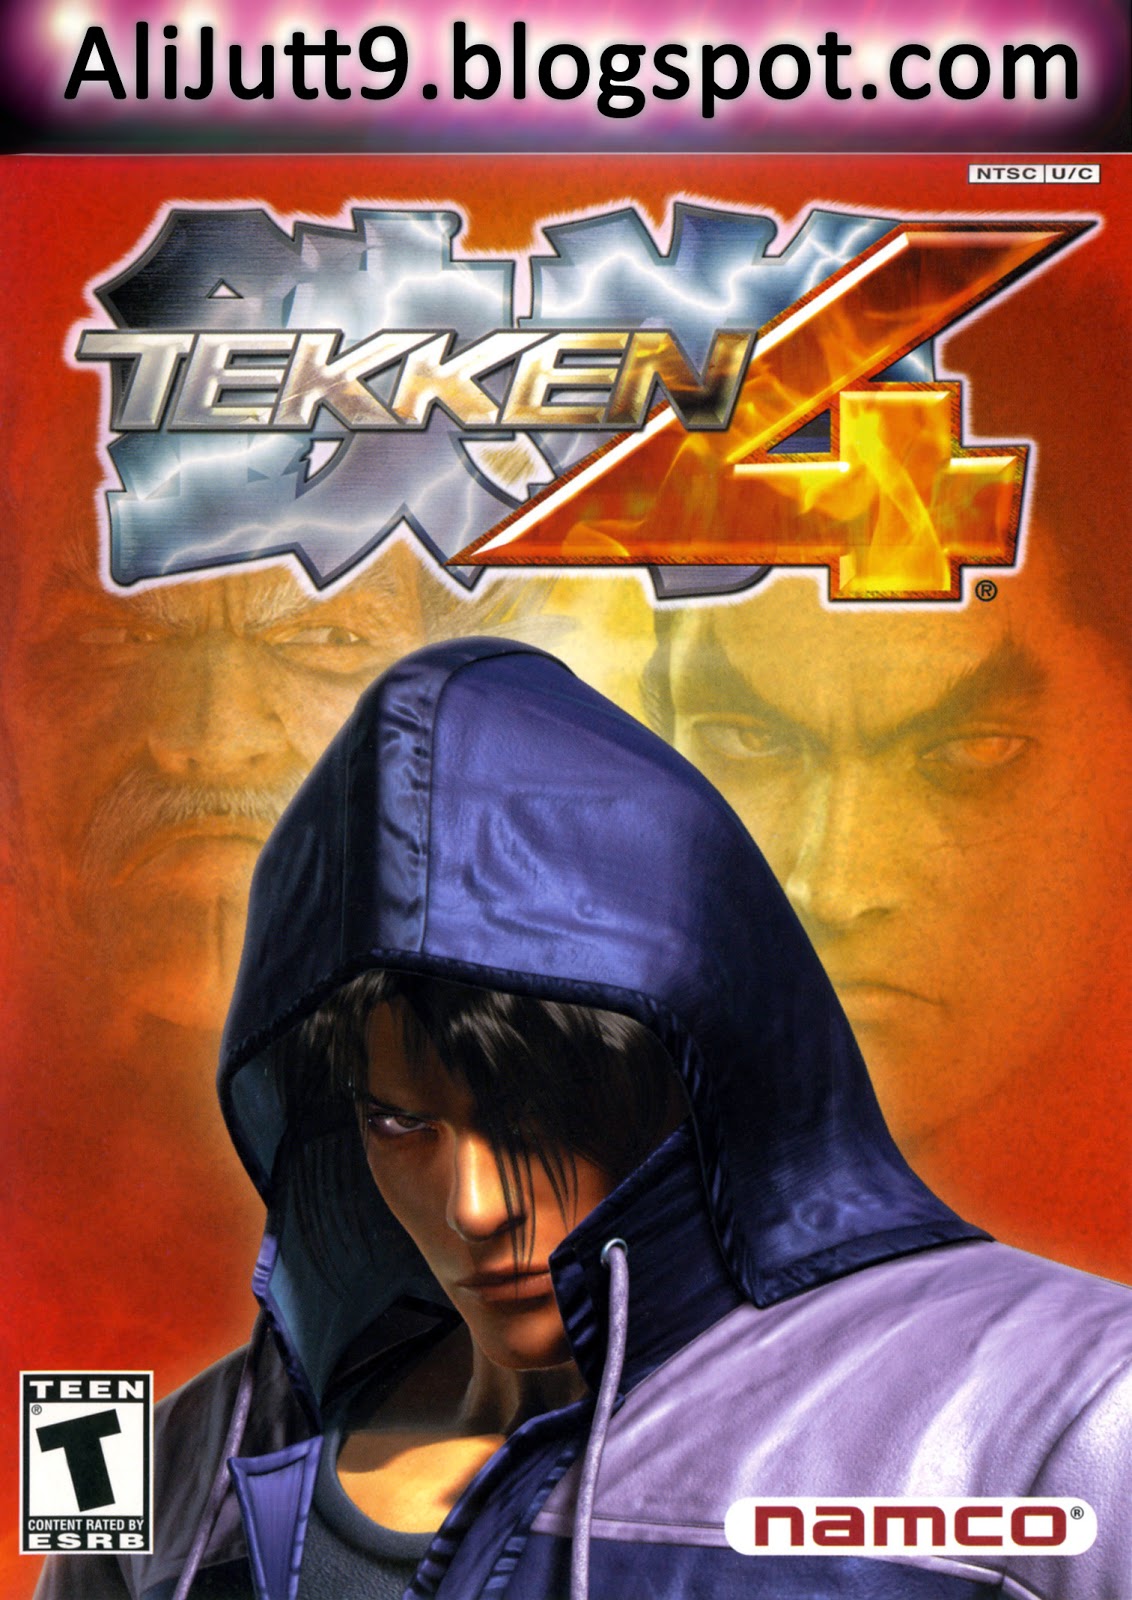 Tekken 4 For PC Highly Compressed Just 30 Mb.rar